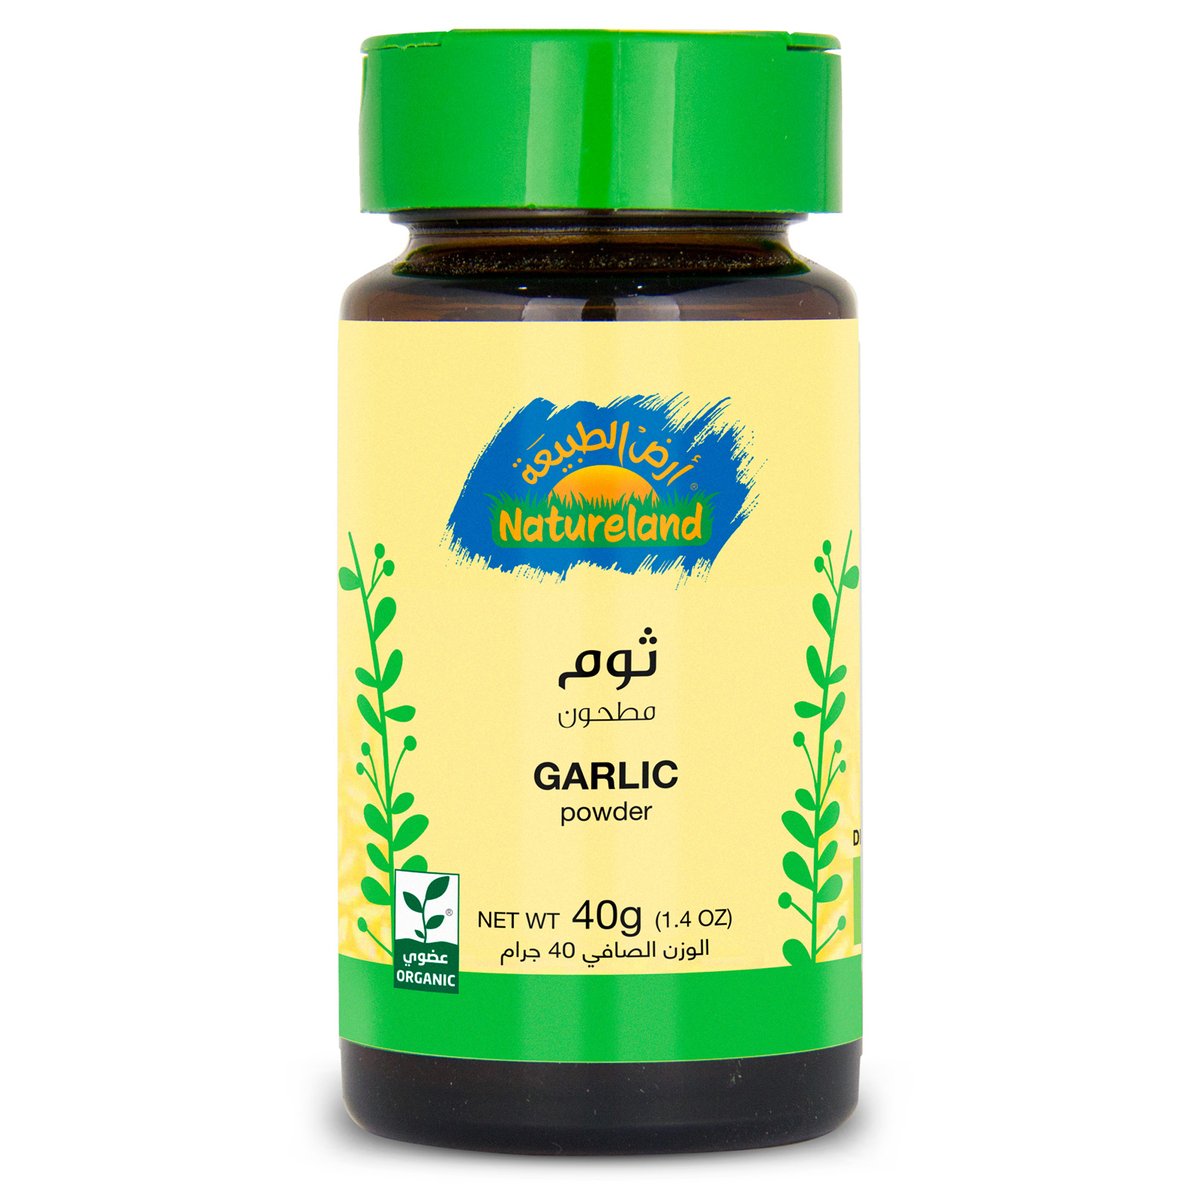 Natureland Organic Garlic Powder 40g